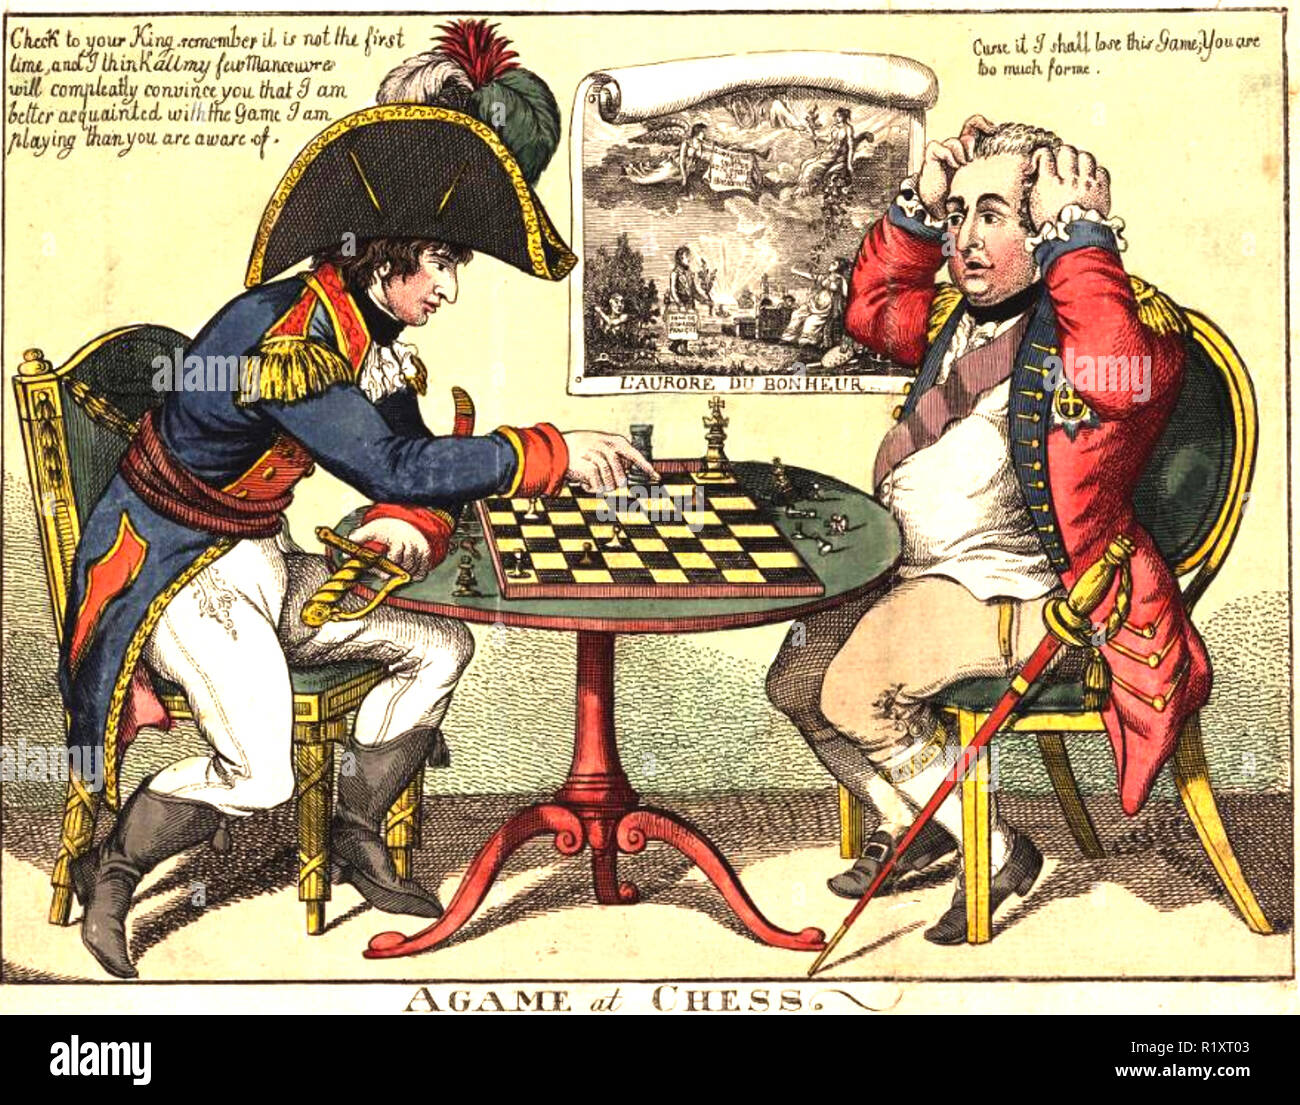 Un jeu d'échecs Napoléon outmaneuvers facilement au roi George III dans un dessin animé 1797 Banque D'Images